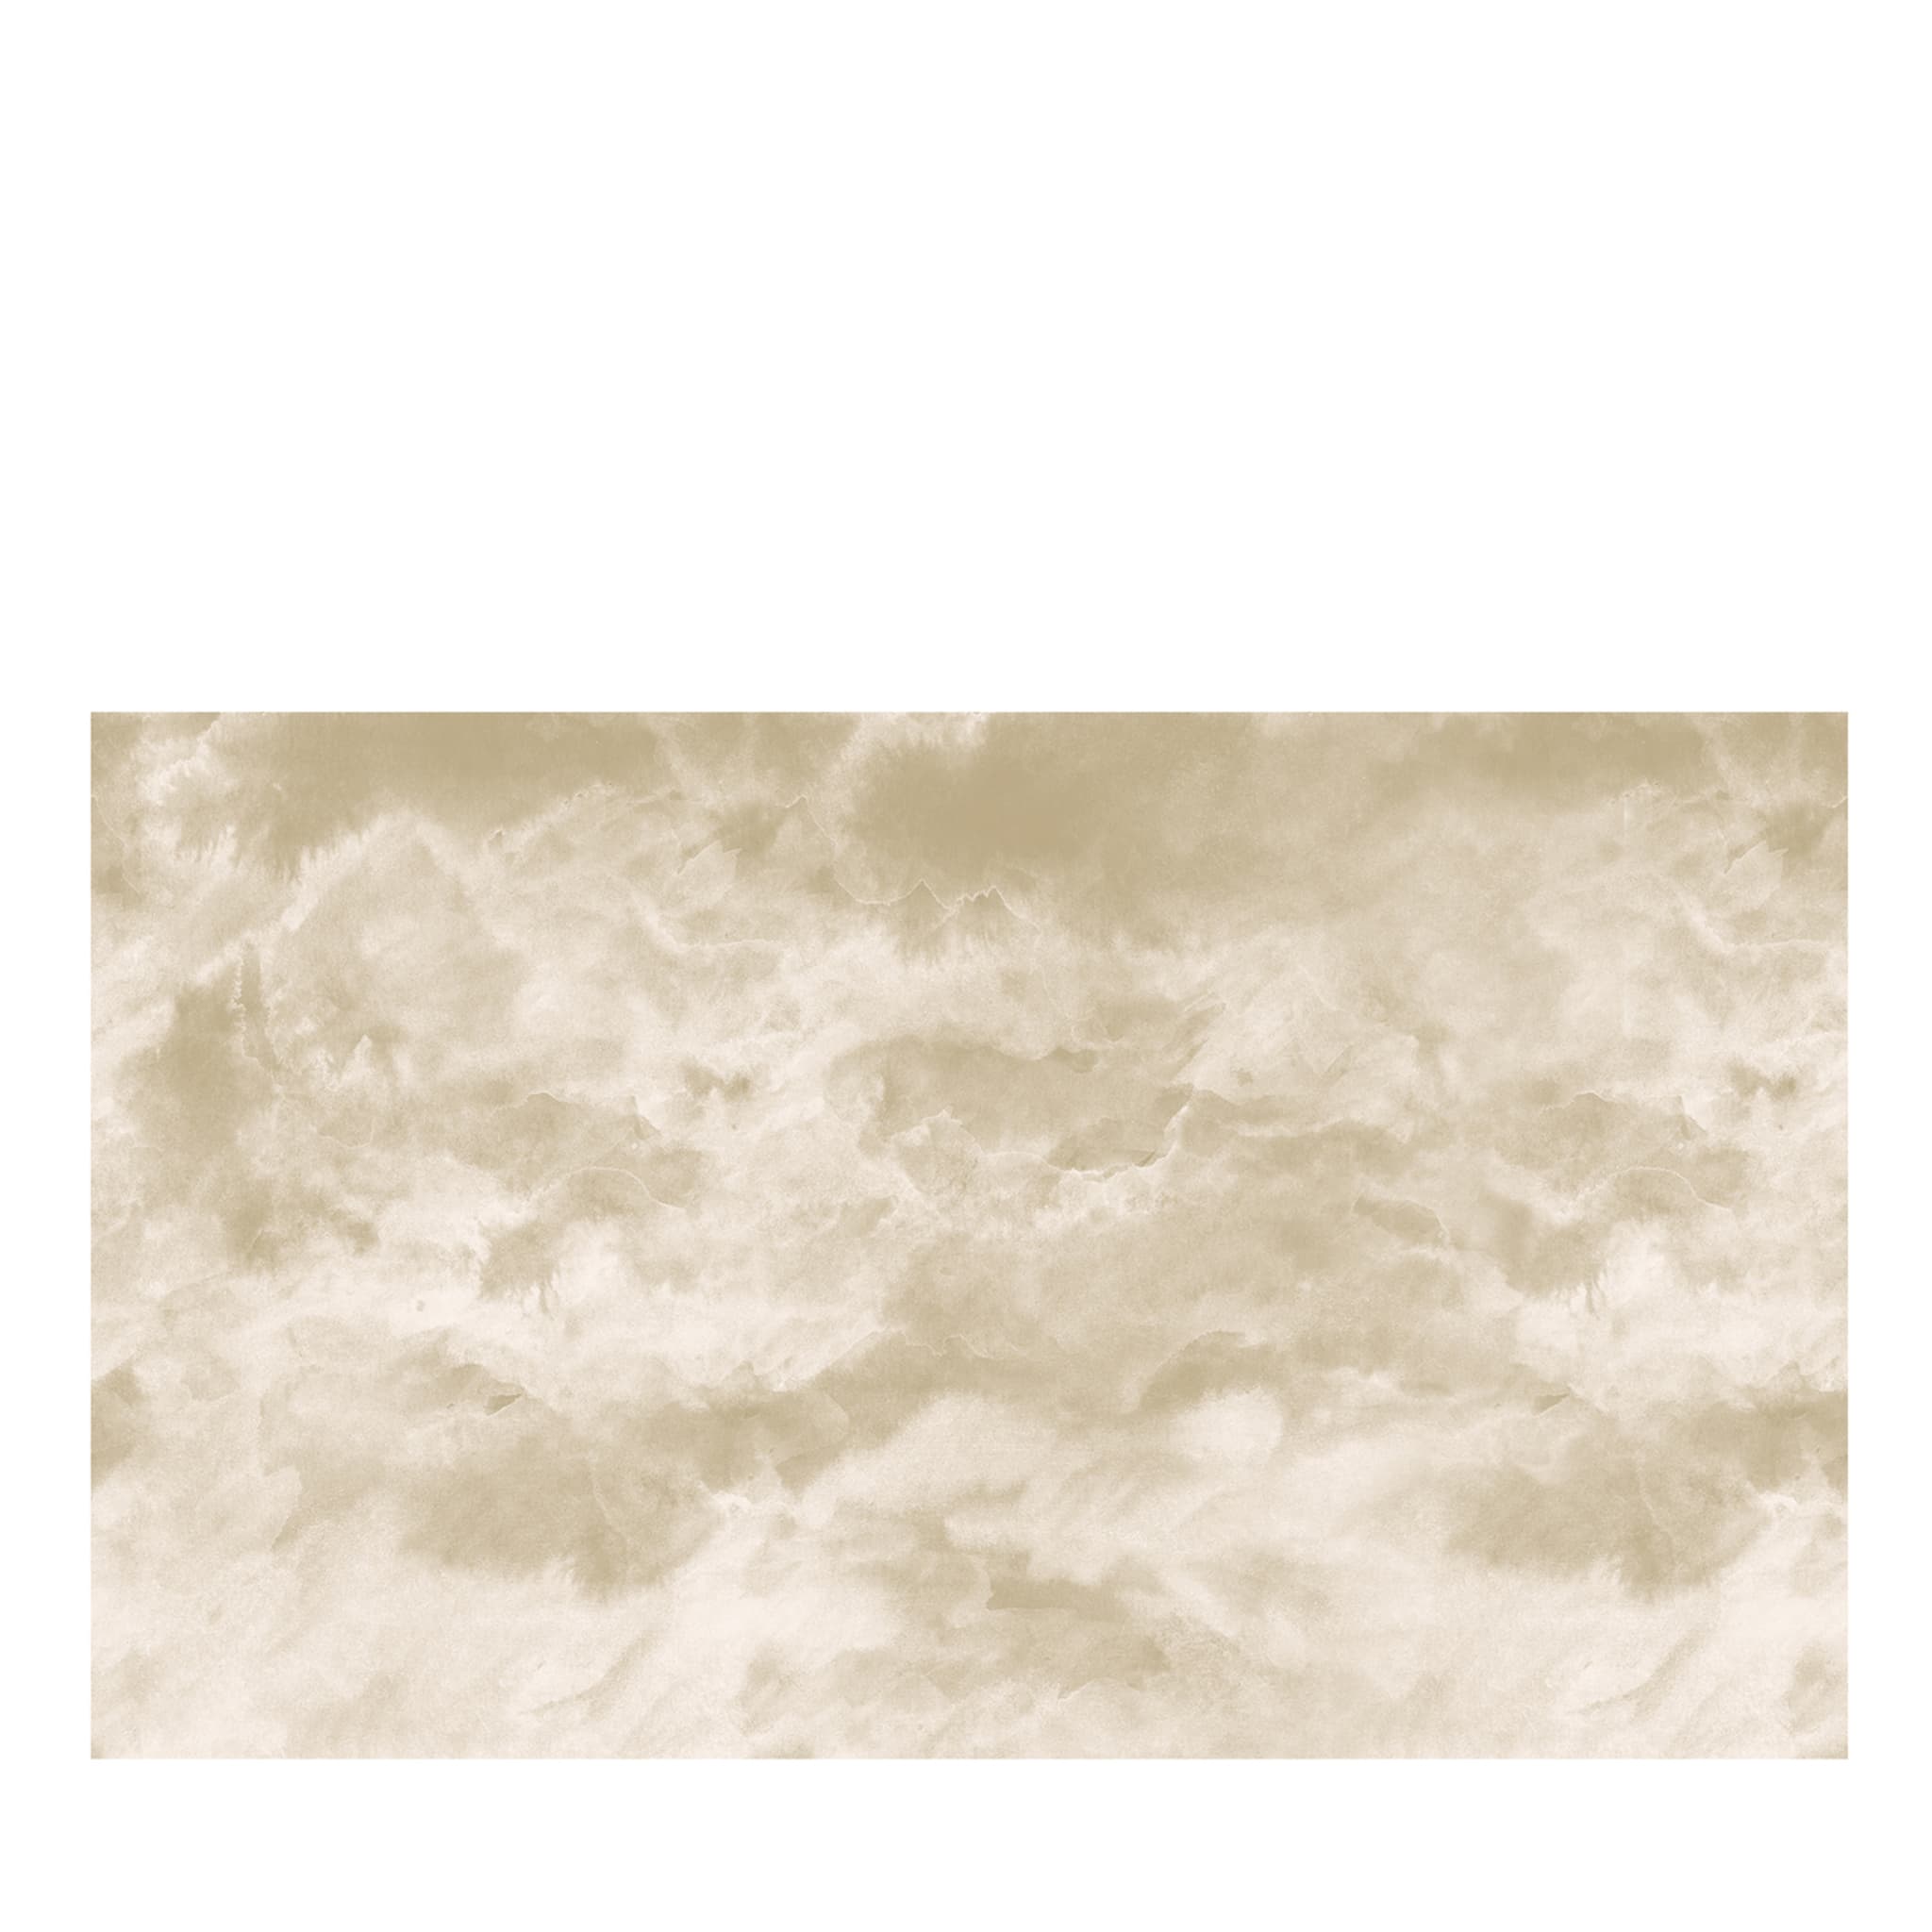 Nuvoloso da Jv Lab wallpaper#4 - Vista principale